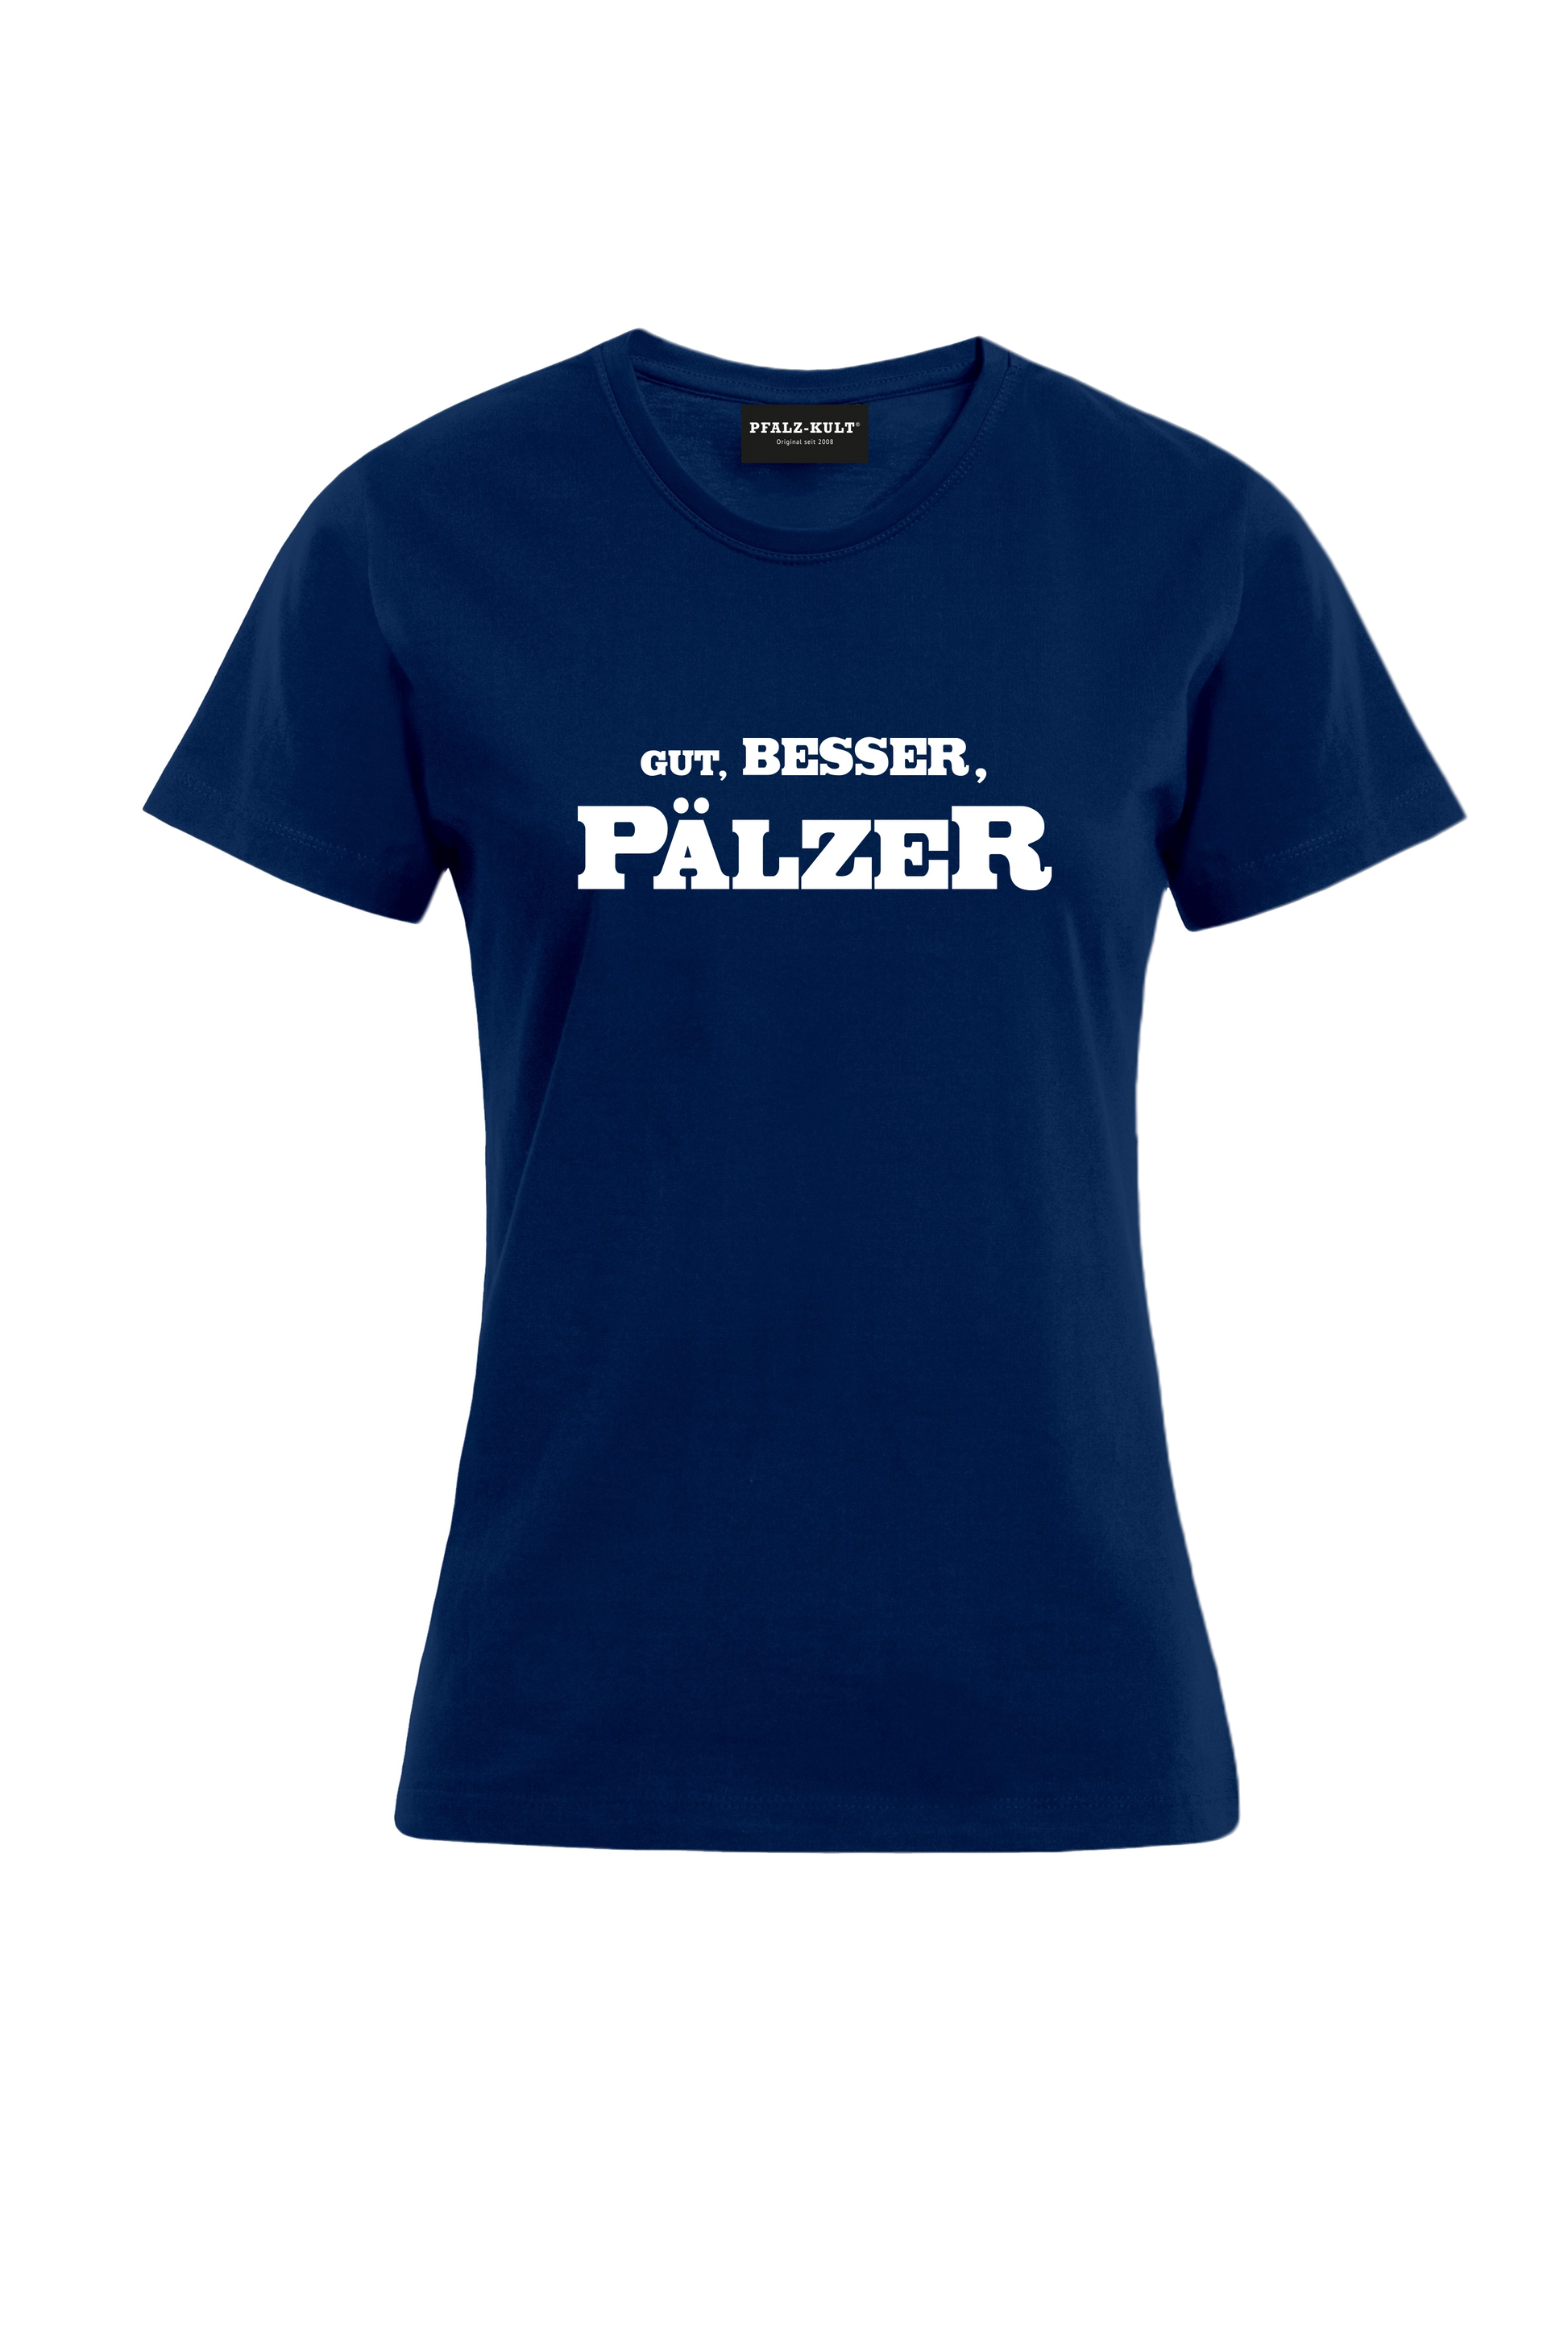 Gut, besser, Pälzer Damen T-Shirt in blau. Geschenkidee auf pfälzisch von Pfalz-Kult aus DÜW